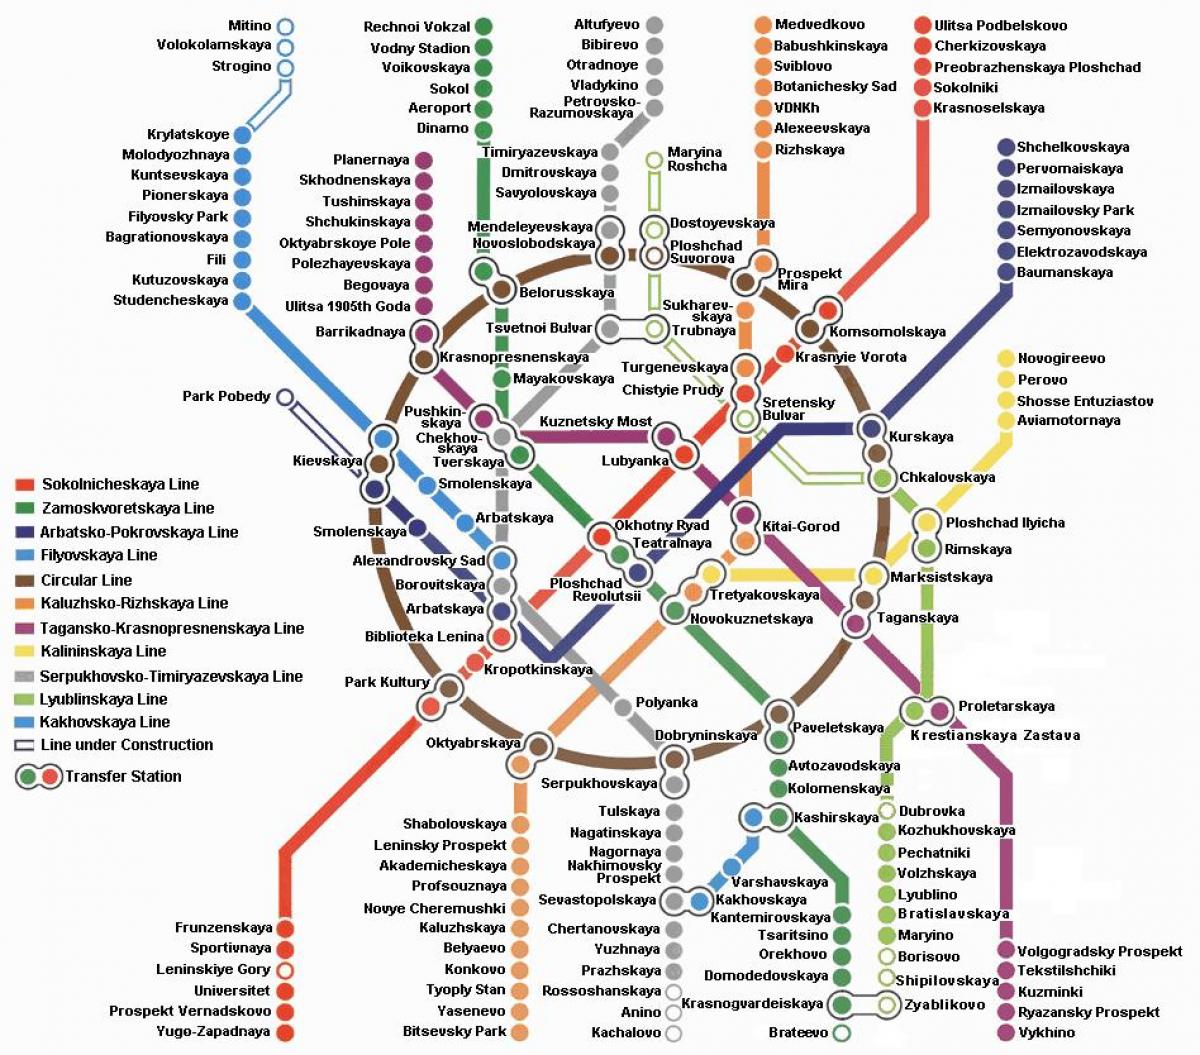 Moscow metro tiếng Anh đem lại cho du khách nước ngoài một trải nghiệm thú vị và dễ dàng hơn khi khám phá thành phố. Với thông tin chính xác và đầy đủ, bạn sẽ khám phá được phần lớn các điểm đến thú vị của Moscow.